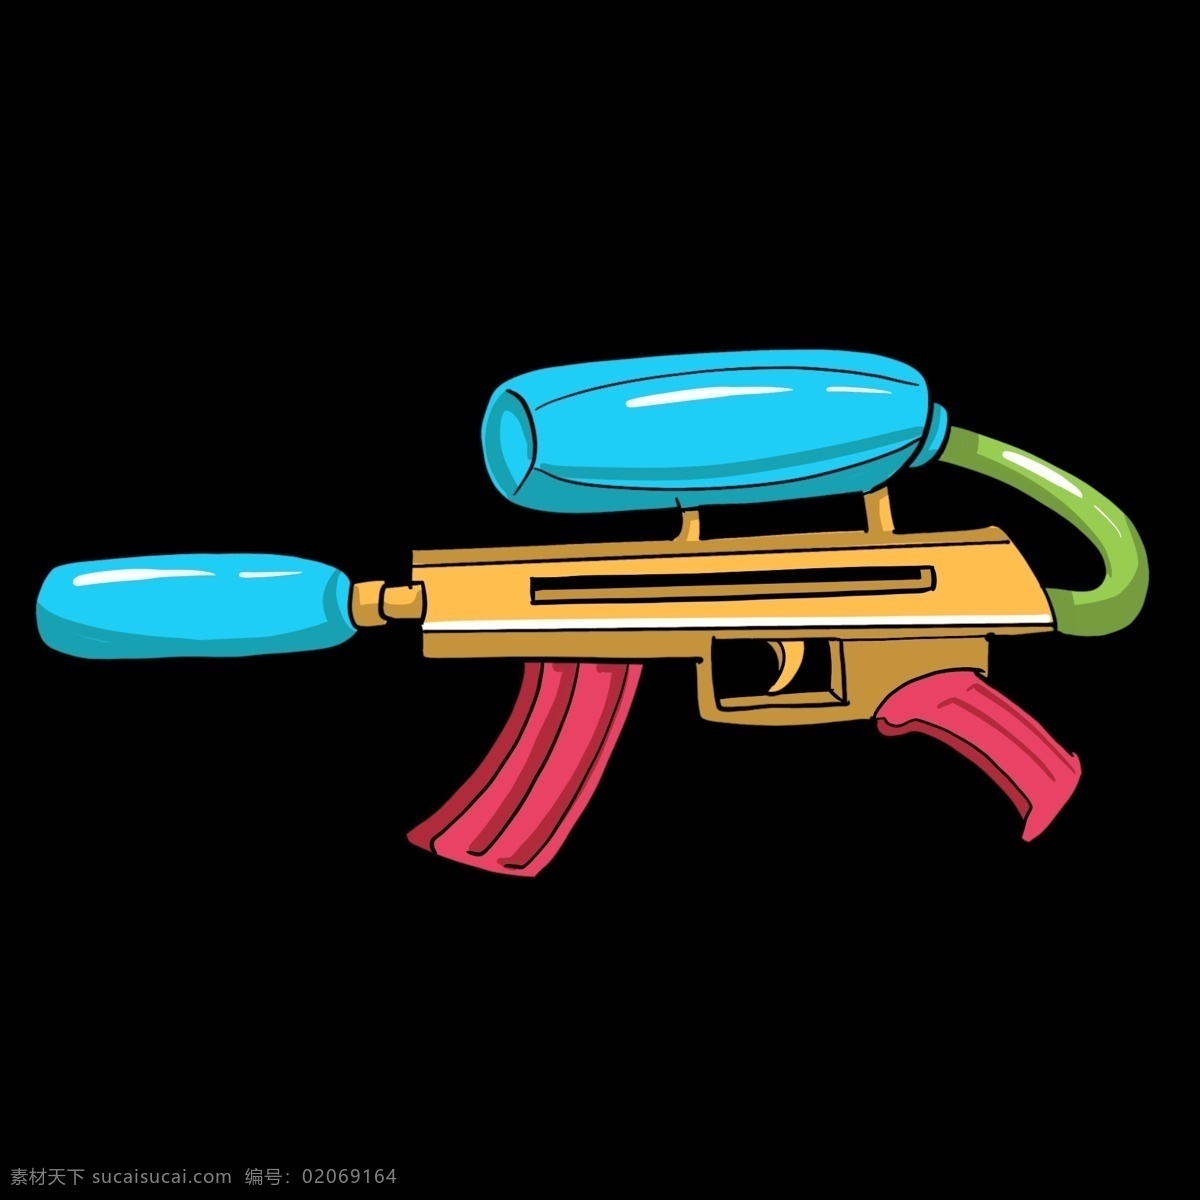 玩具 水枪 装饰 插画 玩具水枪 漂亮的水枪 黄蓝色水枪 儿童水枪 水枪装饰 水枪插画 立体水枪